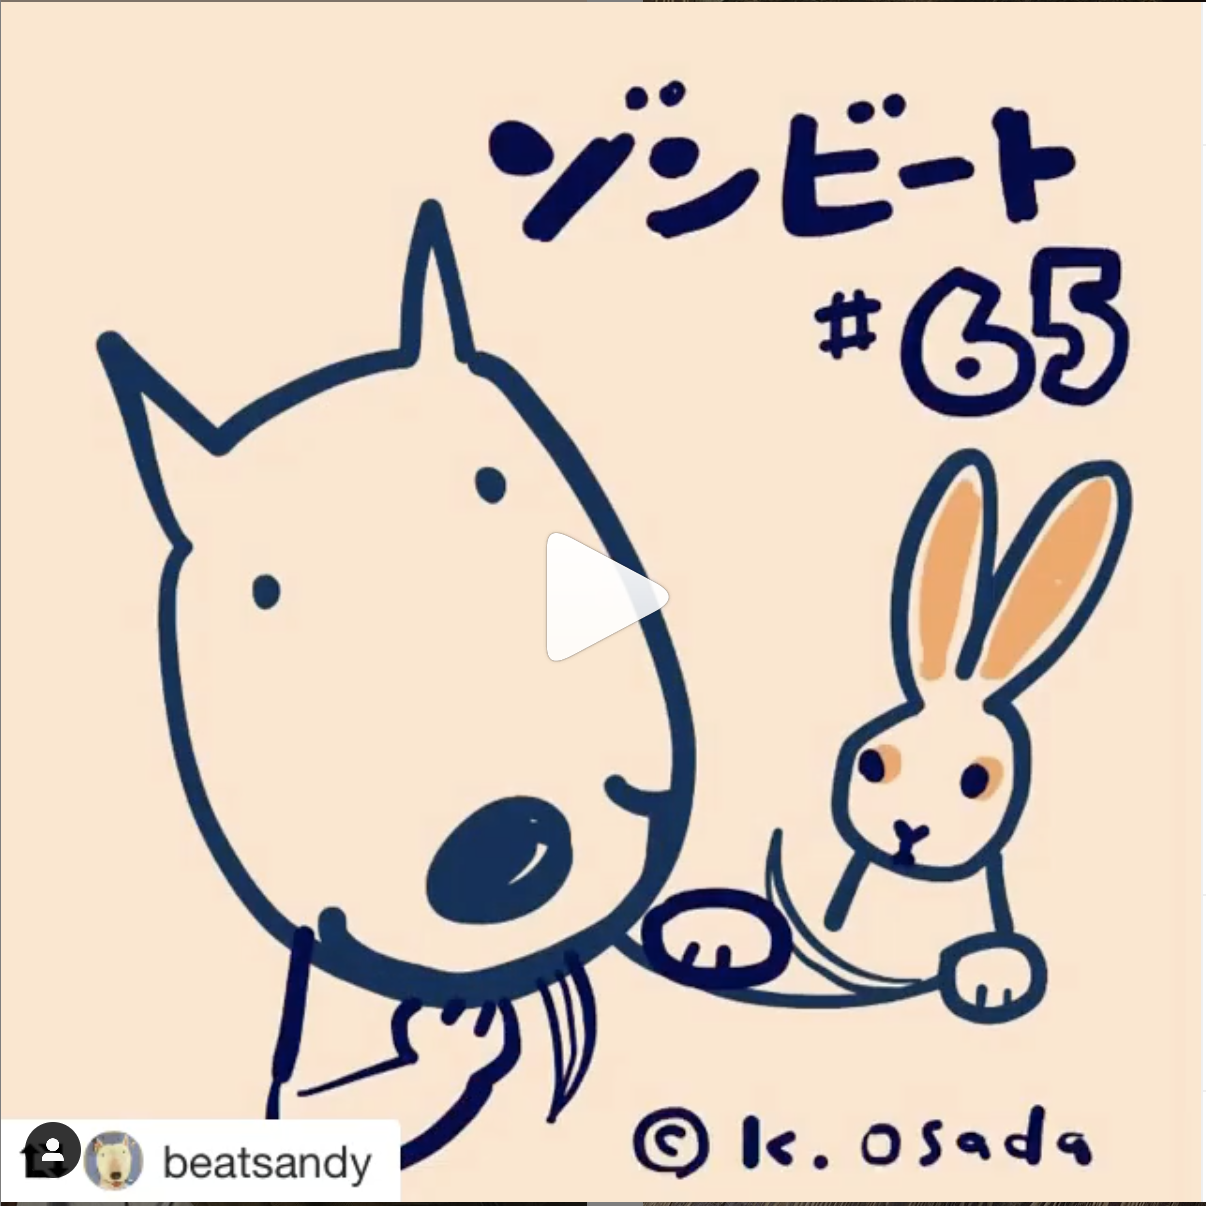 Dog Cafe23年目!ゾンビート展